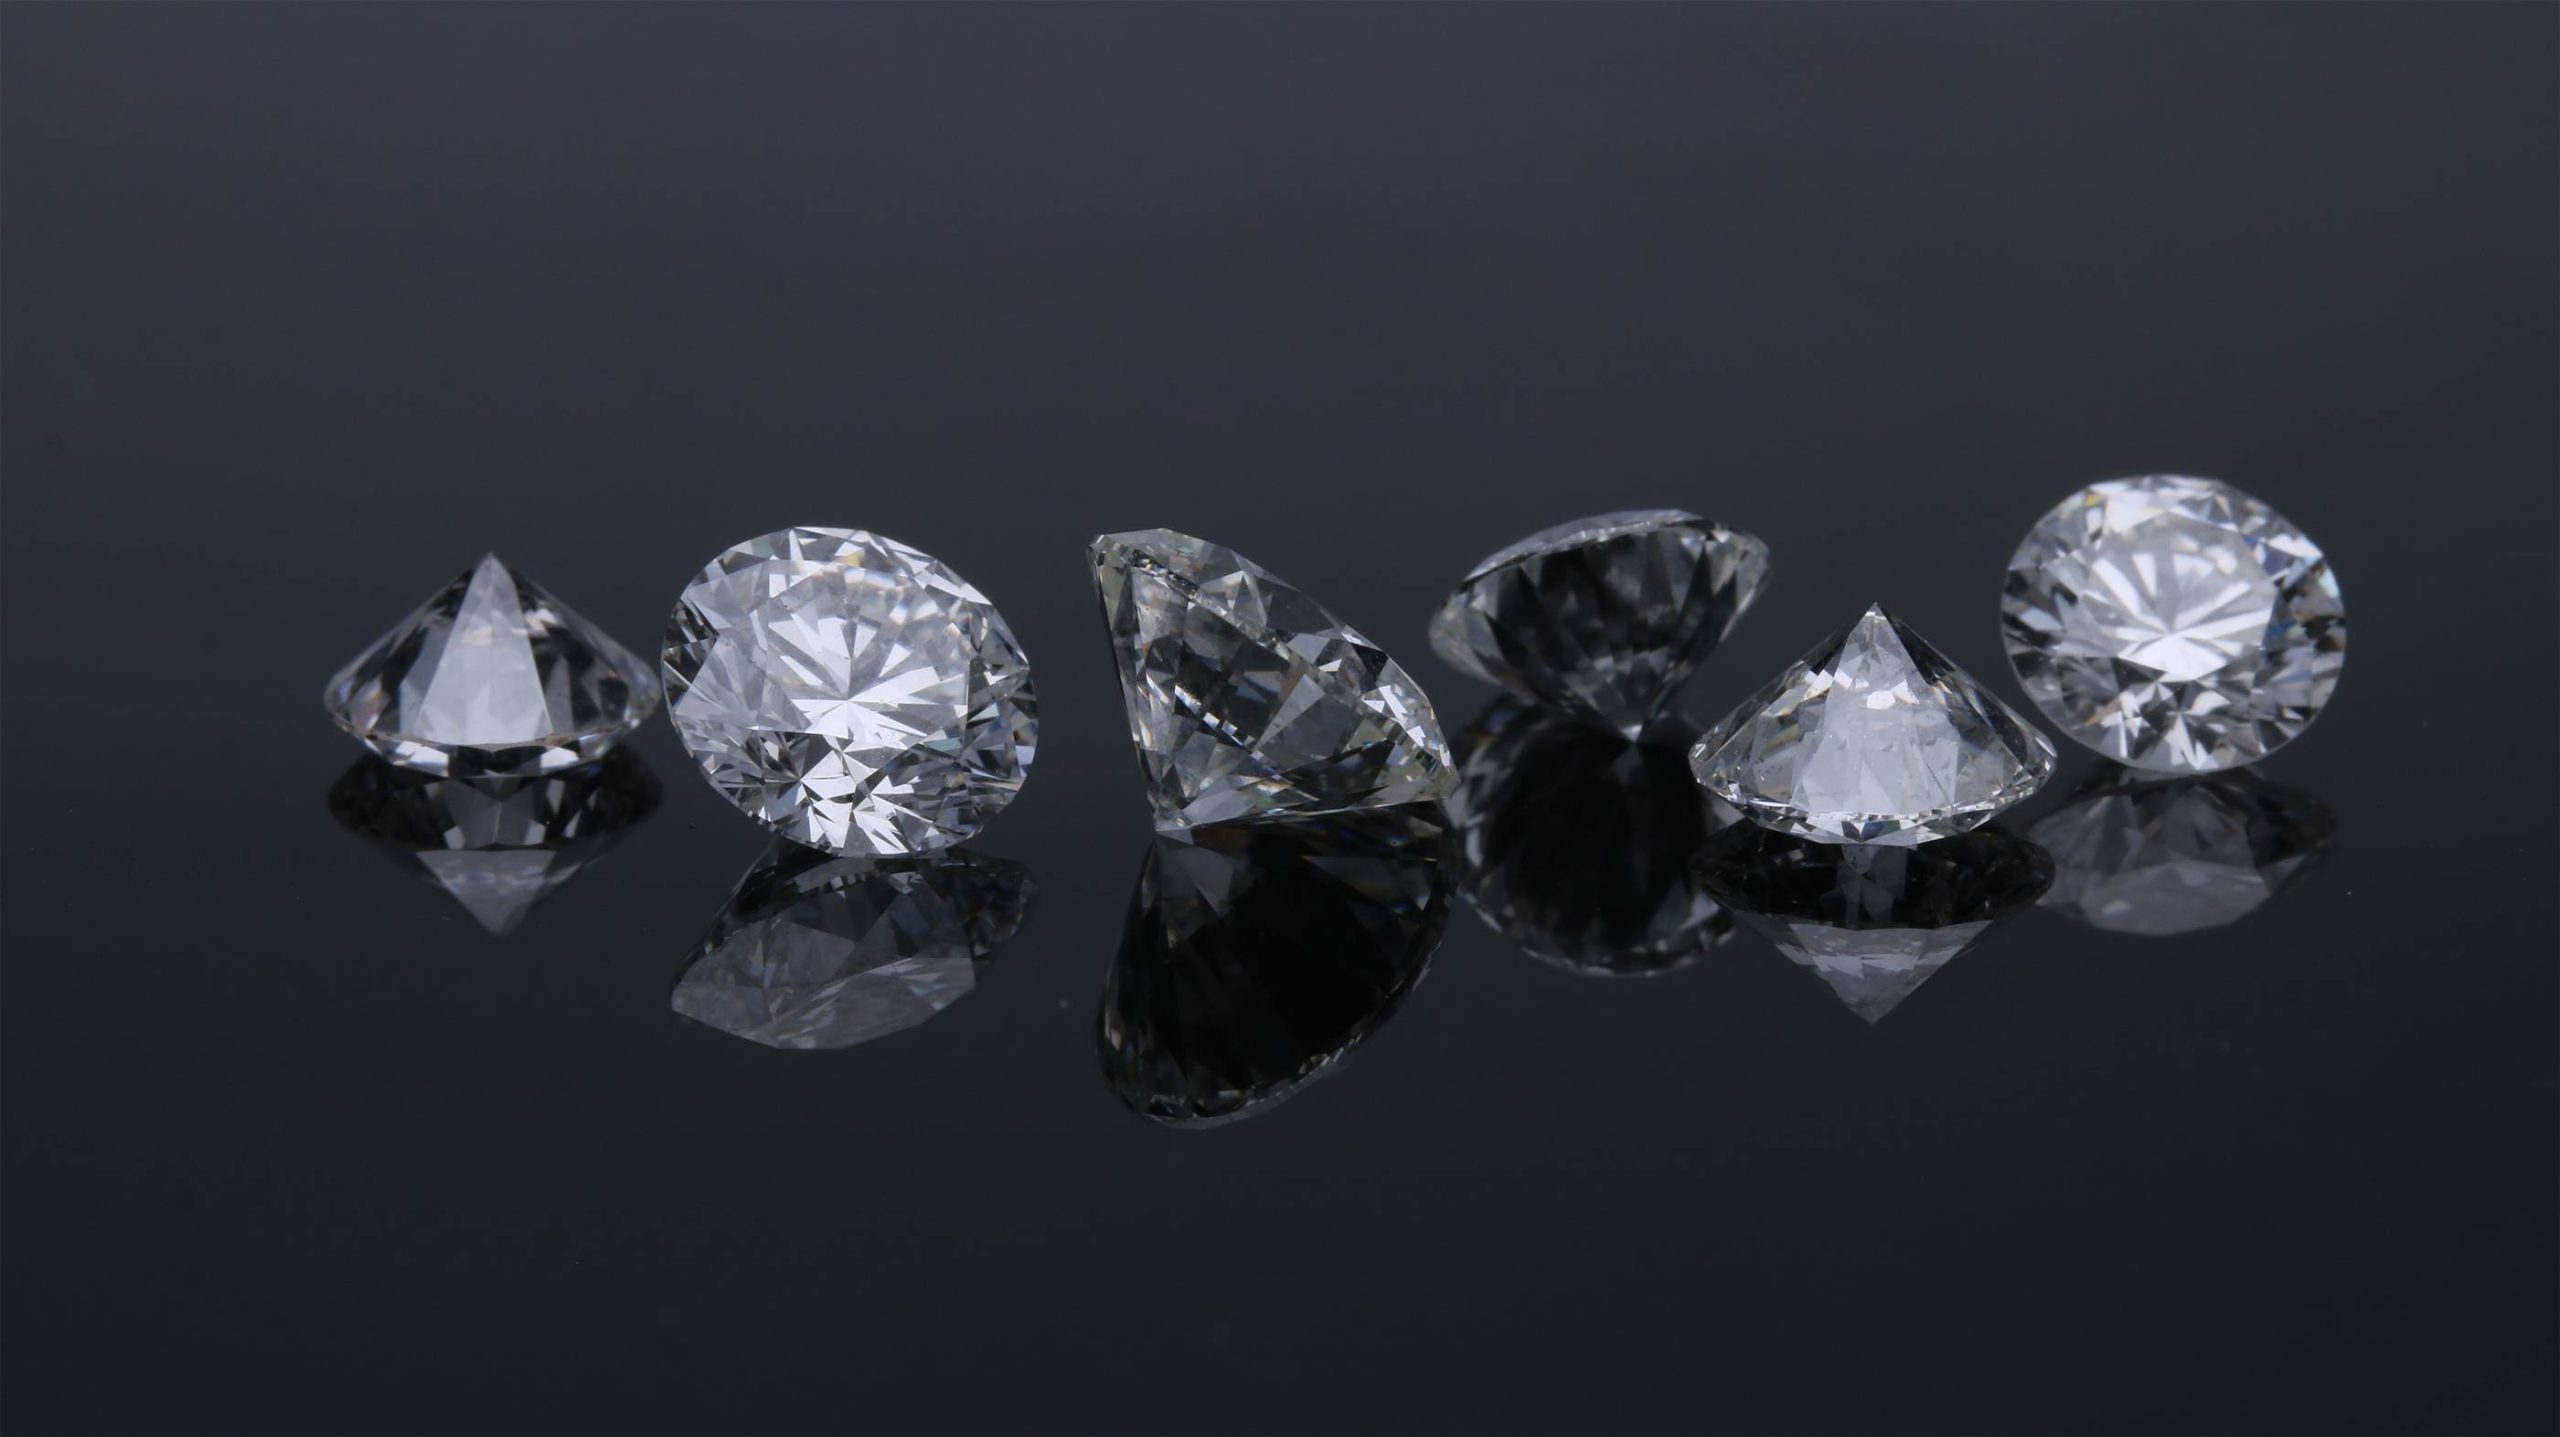 Laboratorijoje užauginti deimantai: kokia jų istorija ir ar verta į juos investuoti?